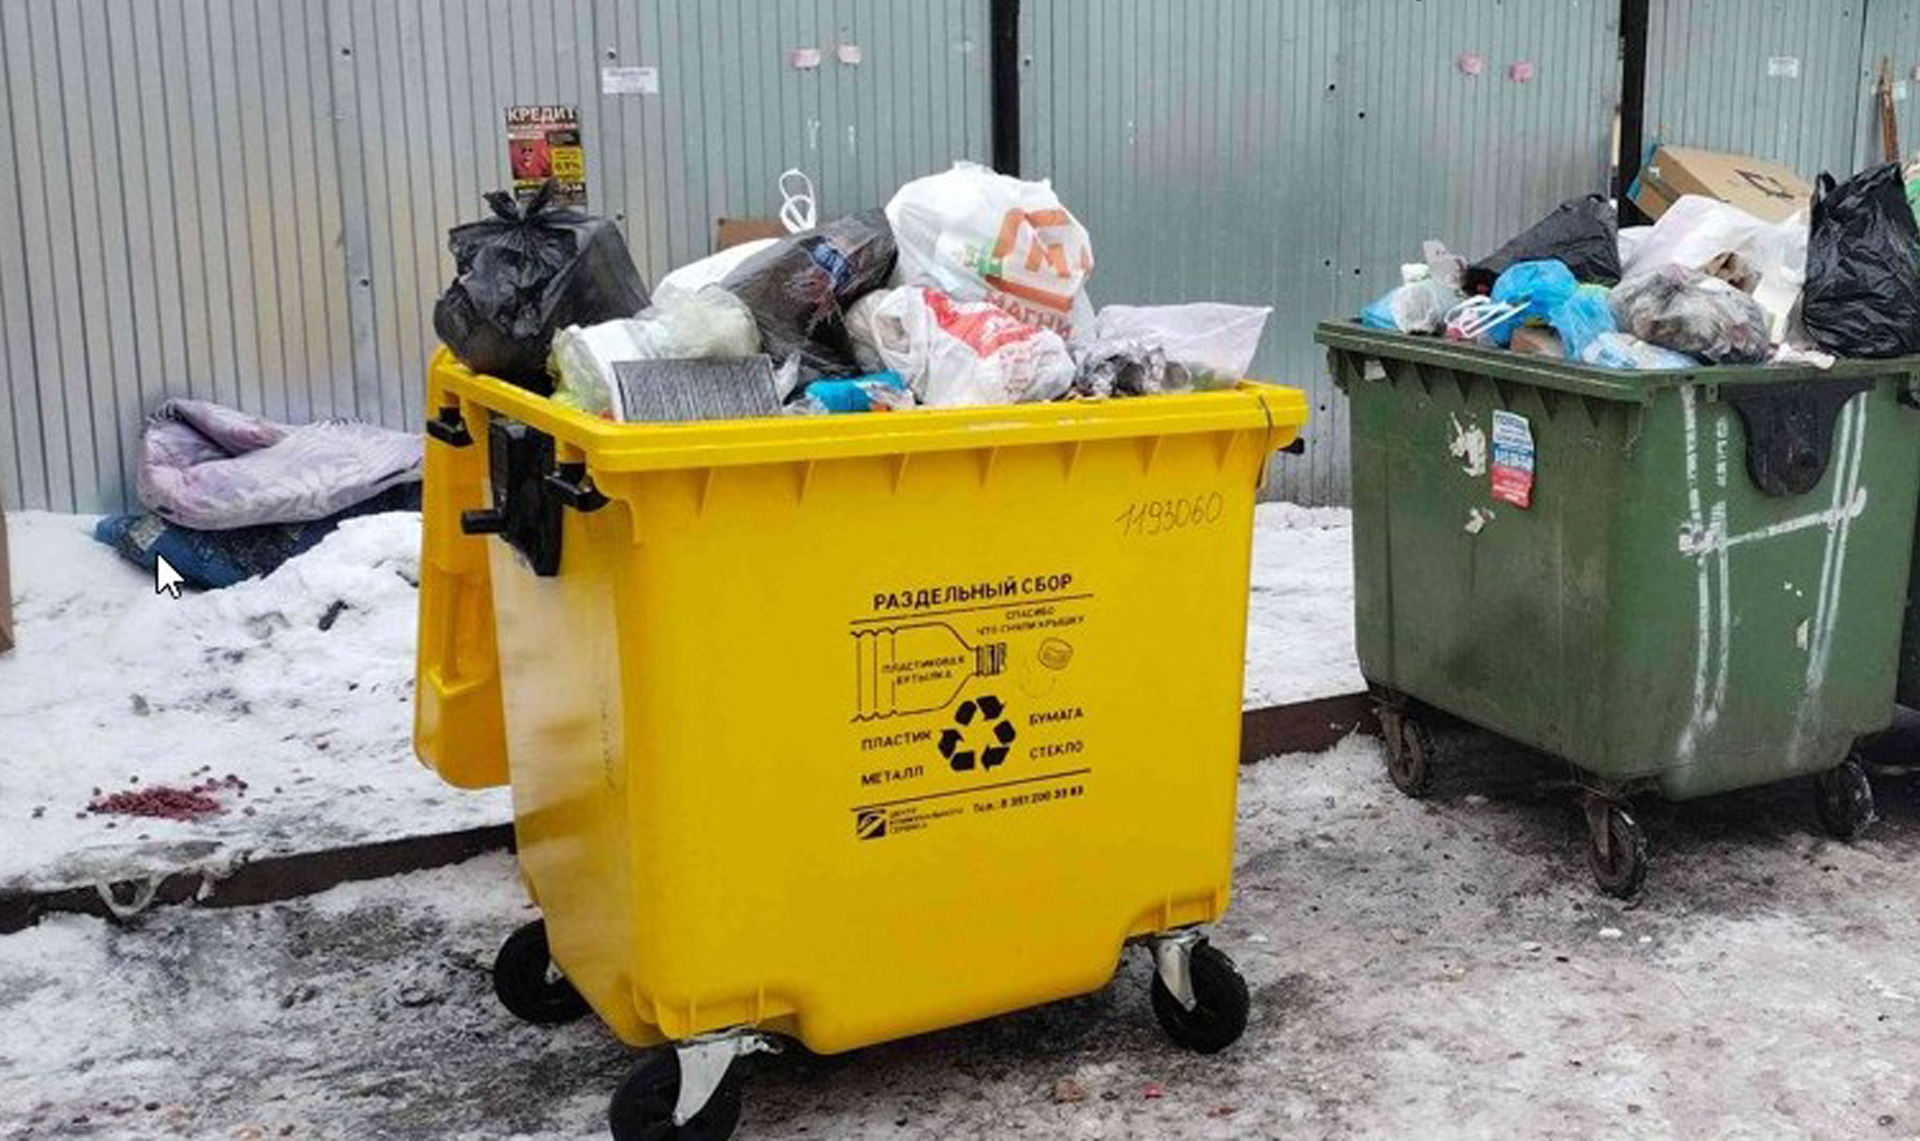 «Проект раздельного сбора мусора – убыточен». За год каждый челябинец отправил на переработку менее 3 пластиковых бутылок